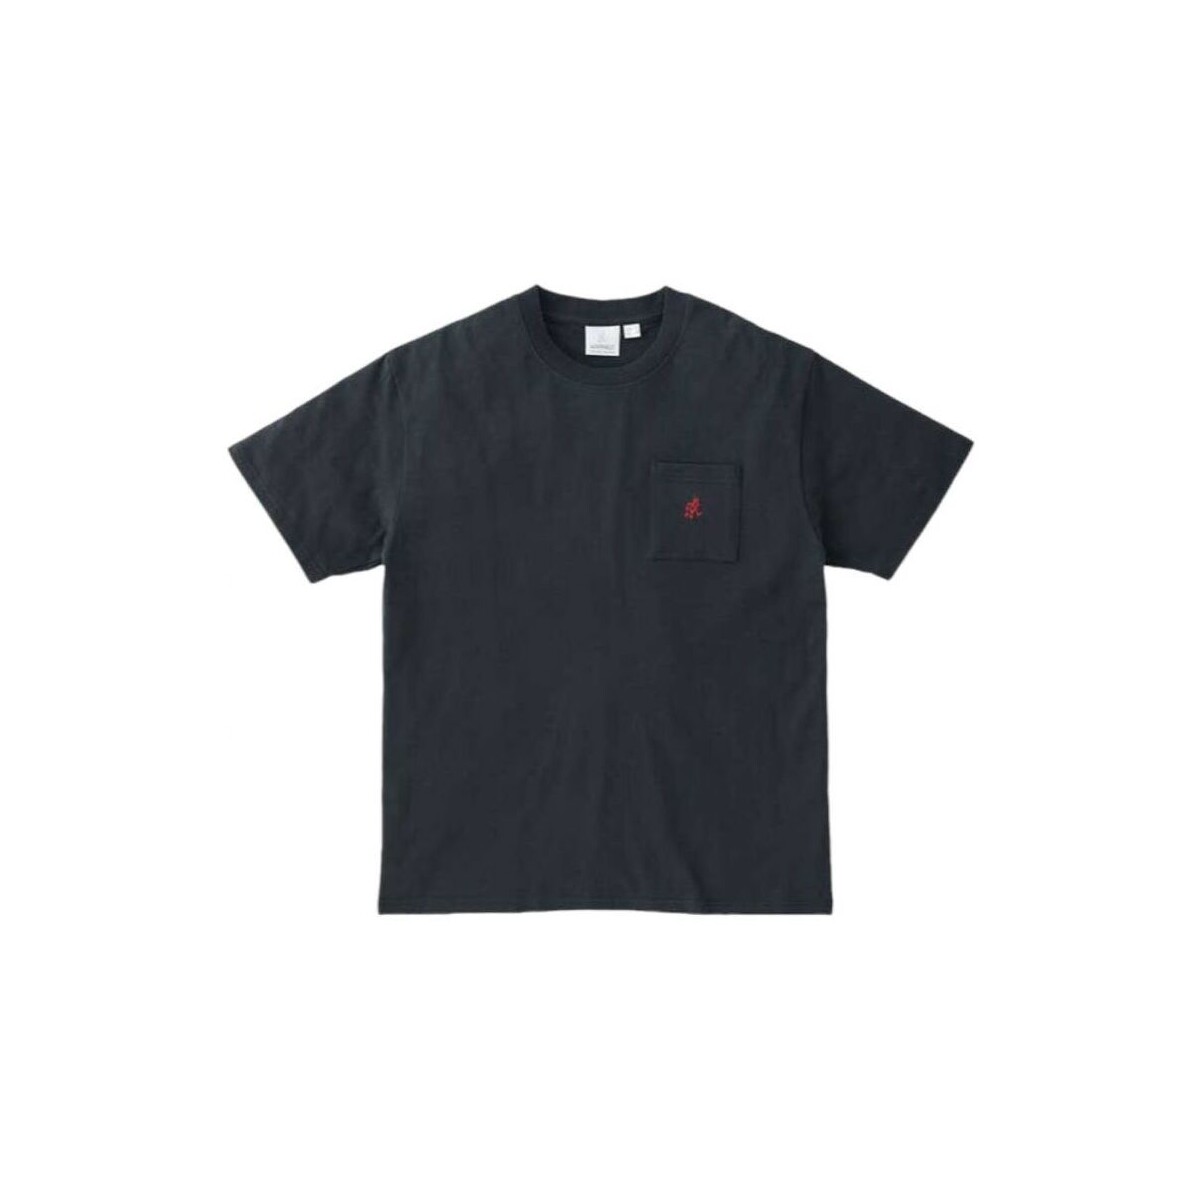 Vêtements Homme T-shirts manches courtes Gramicci T-shirt One Point Homme Vintage Black Noir